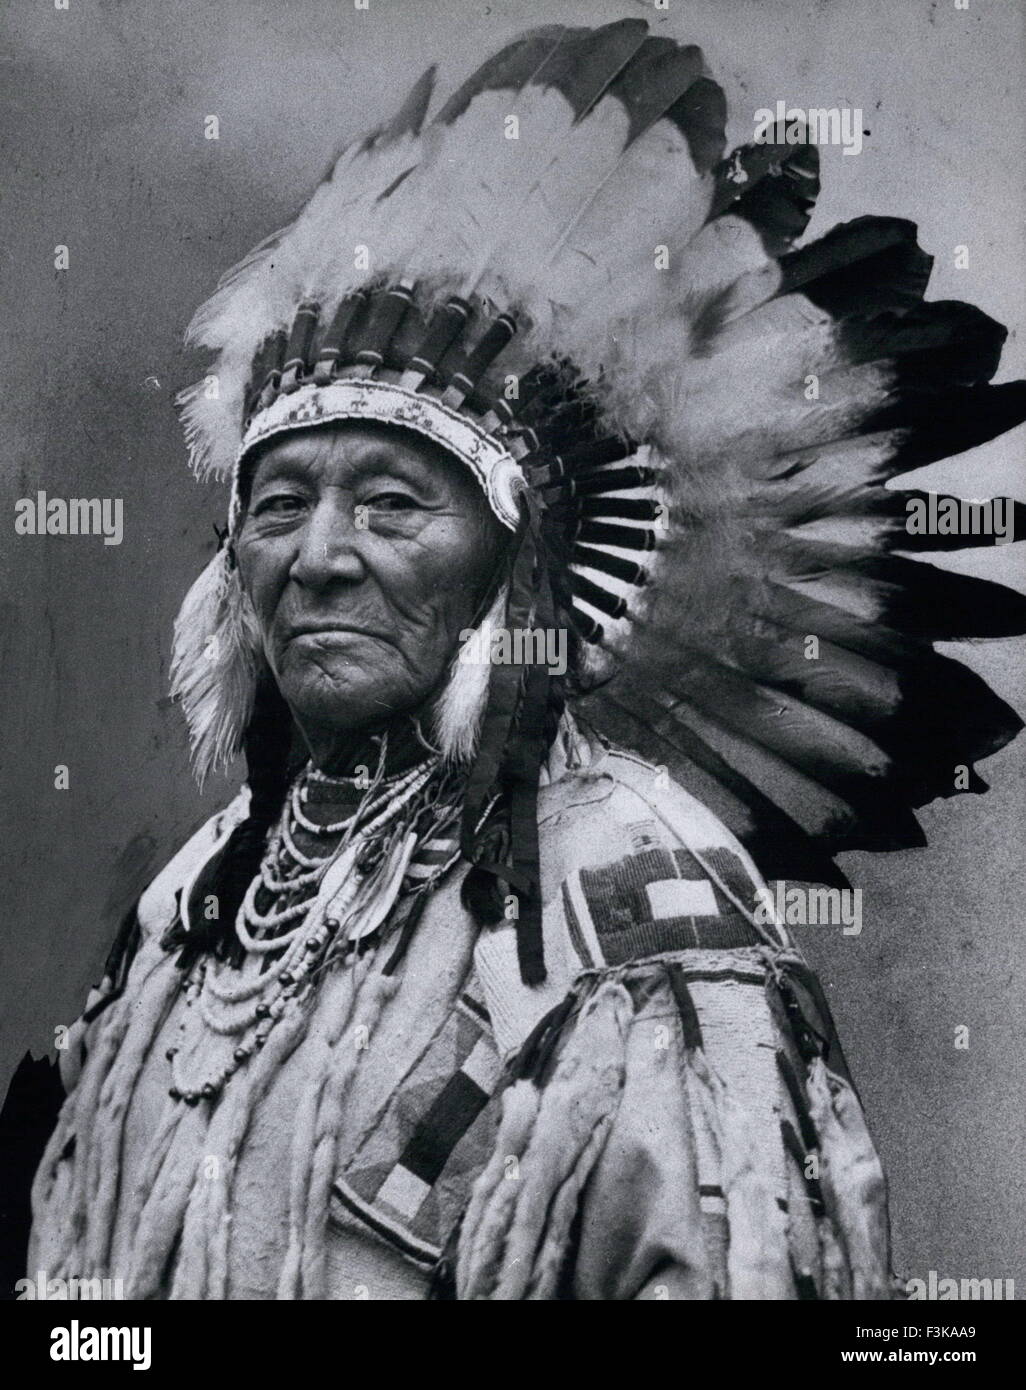 1925 - Chief Plenty der Crow-Indianer nach dem Besuch von Präsident Harding. Viele Coups '' Errungenschaften '' (1848-1932) war eine Krähe Chef und visionärer Leader. Er Verbündete Krähe mit dem weißen bei Kriegsende für den Westen ausgefochten wurde, weil die Sioux und Cheyenne (der weißen Besiedlung des Gebietes gegen wurden) die traditionellen Feinde des Raben waren. Viele Coups hatte auch eine Vision erlebte, als er sehr jung war, dass gebietsfremden Personen Kontrolle seiner Heimat (Montana), letztlich nehmen würde, so dass er immer das Gefühl, dass Zusammenarbeit viel mehr Widerstand seines Volkes profitieren würden. (Credit Stockfoto